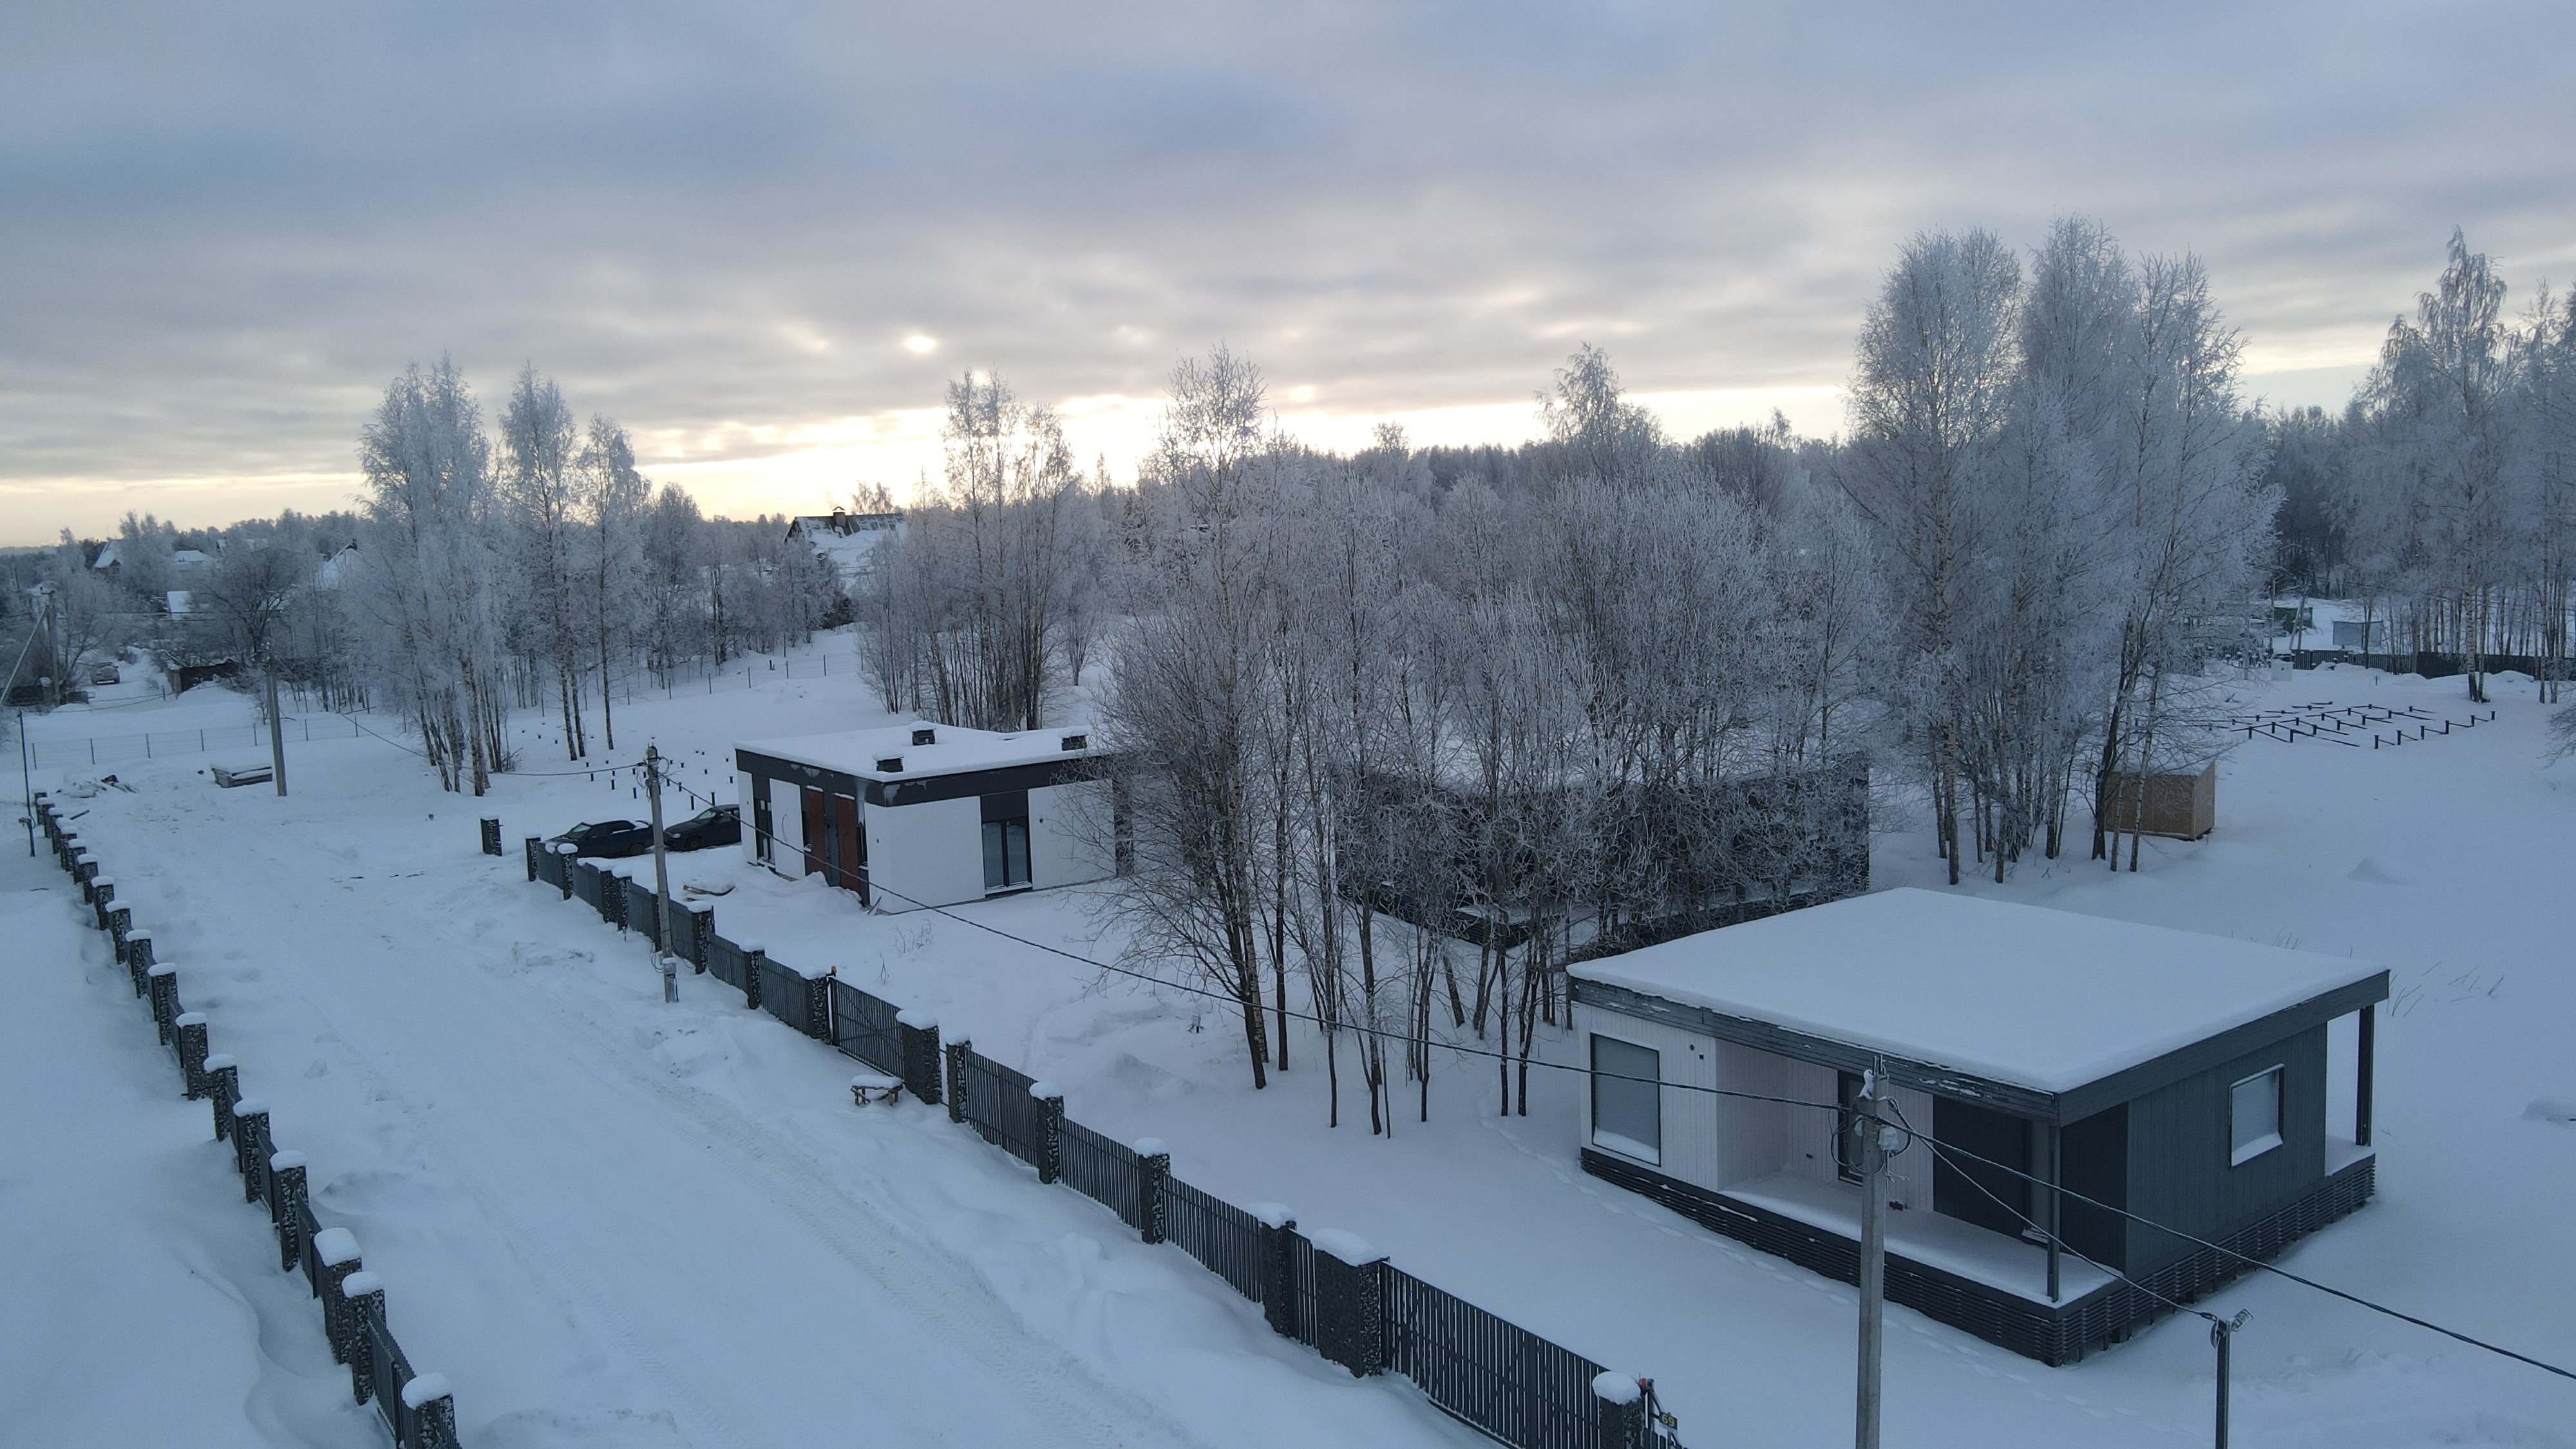 Спрос на загородные дома под Петербургом этой зимой вырос на 30%. Наиболее популярными стали каркасные дома в скандинавском стиле.